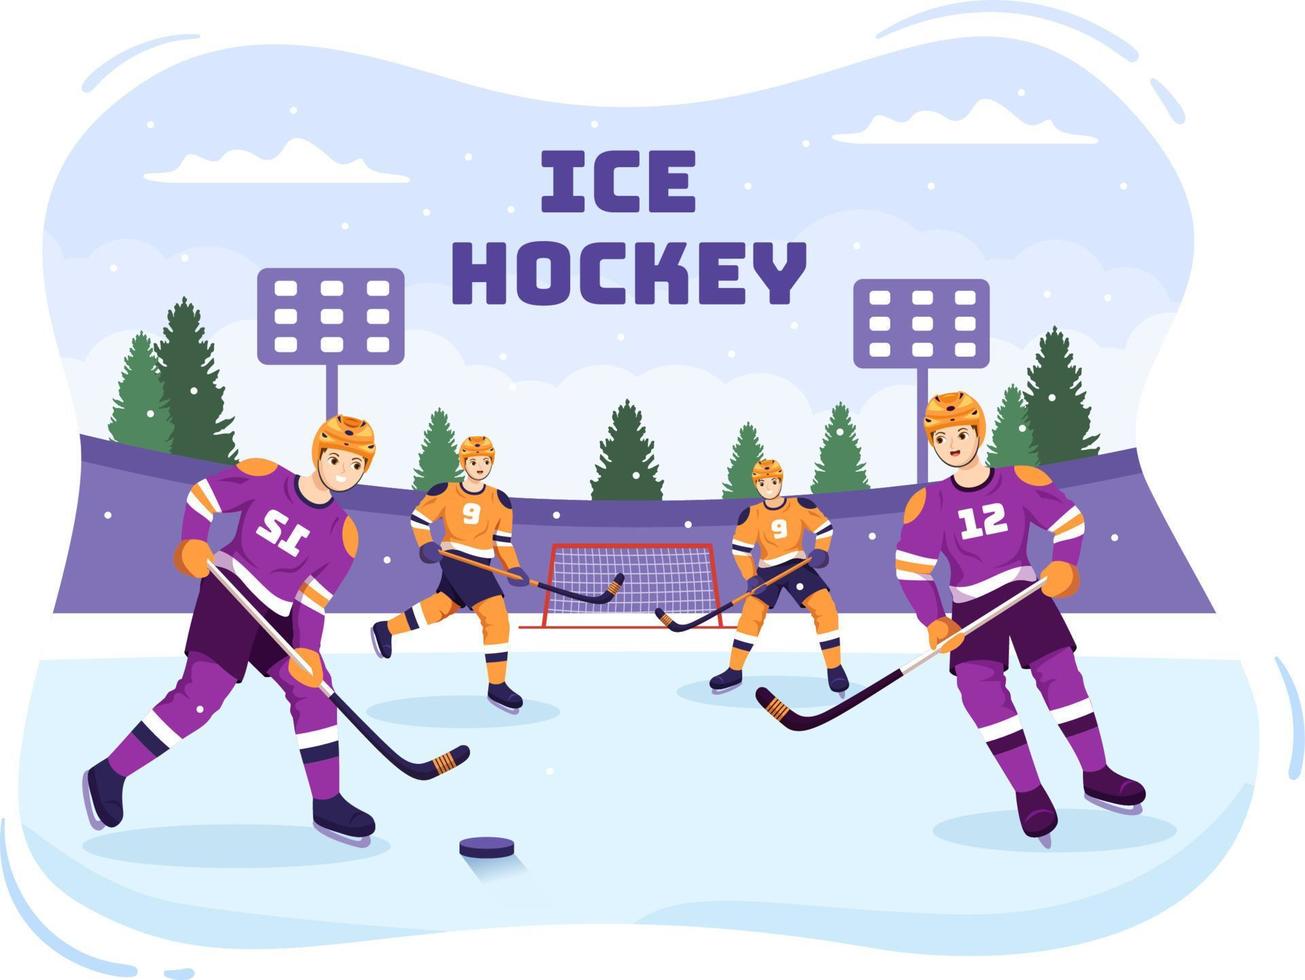 deporte de jugador de hockey sobre hielo con casco, palo, disco y patines en la superficie de hielo para juego o campeonato en ilustración de plantillas dibujadas a mano de dibujos animados planos vector